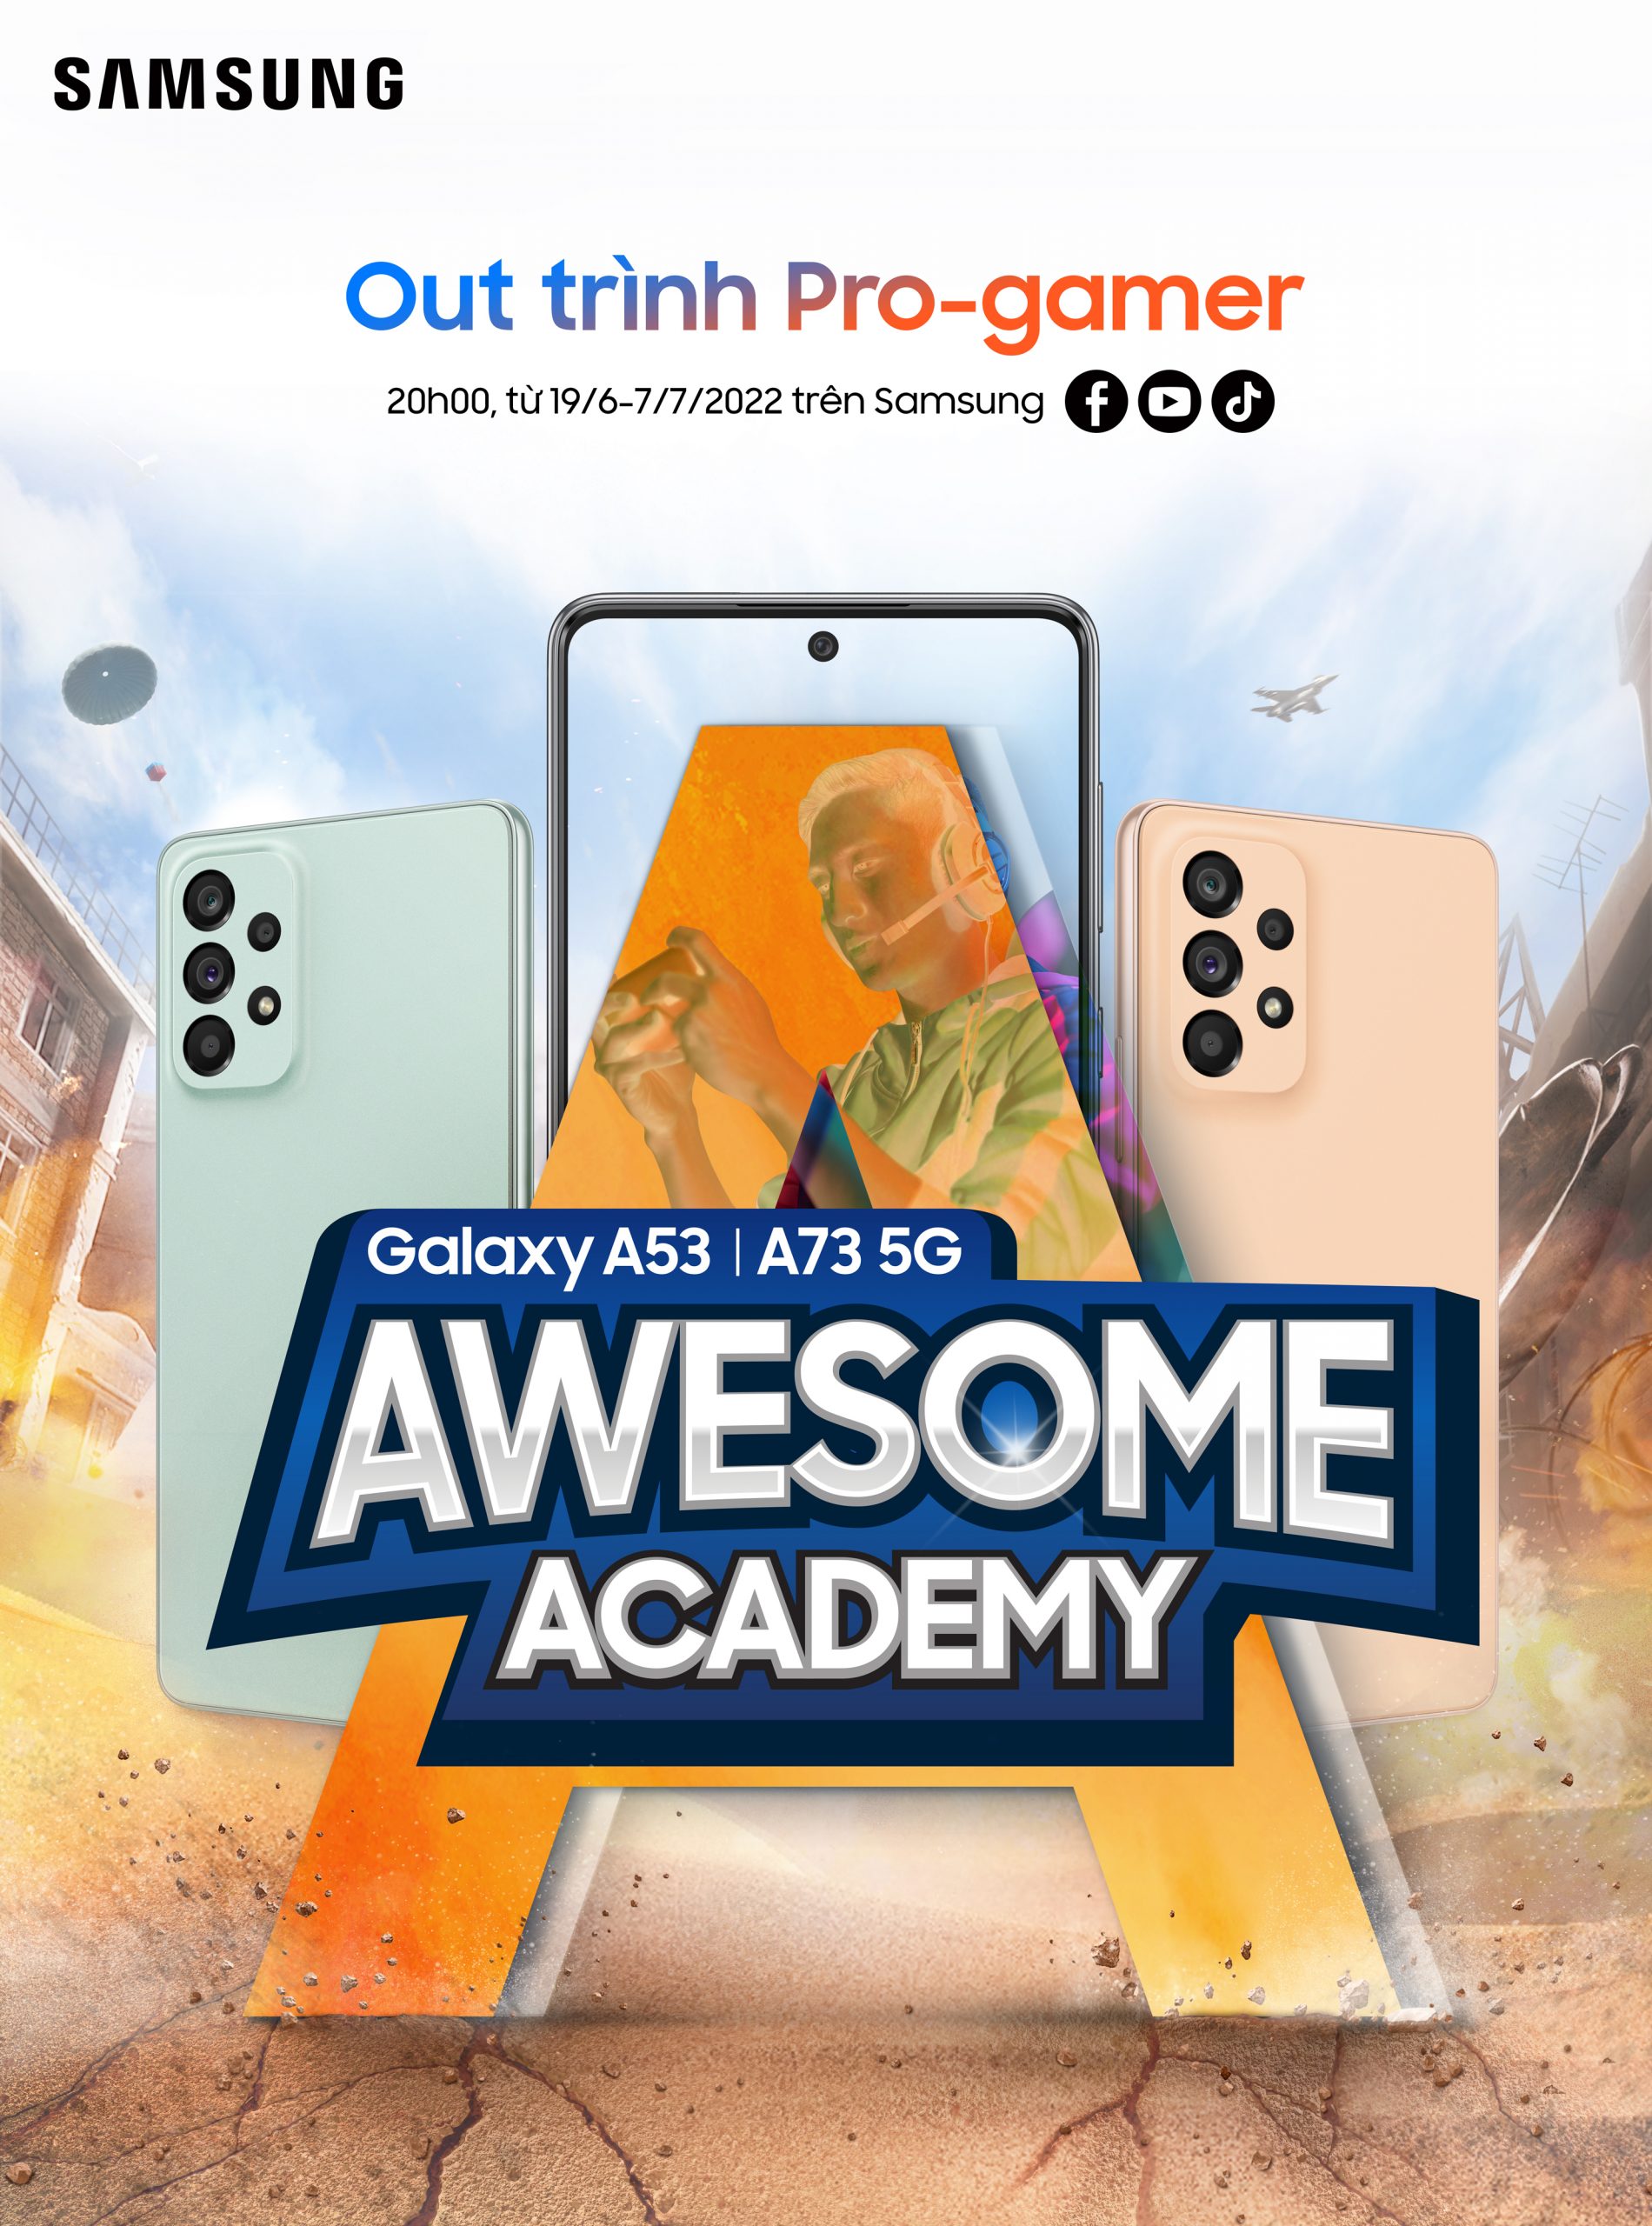 Trực tiếp Awesome Academy tập 5 của Samsung Galaxy A - Bài tập rèn luyện sức khỏe cho gamers cùng thầy Hiếu Pol